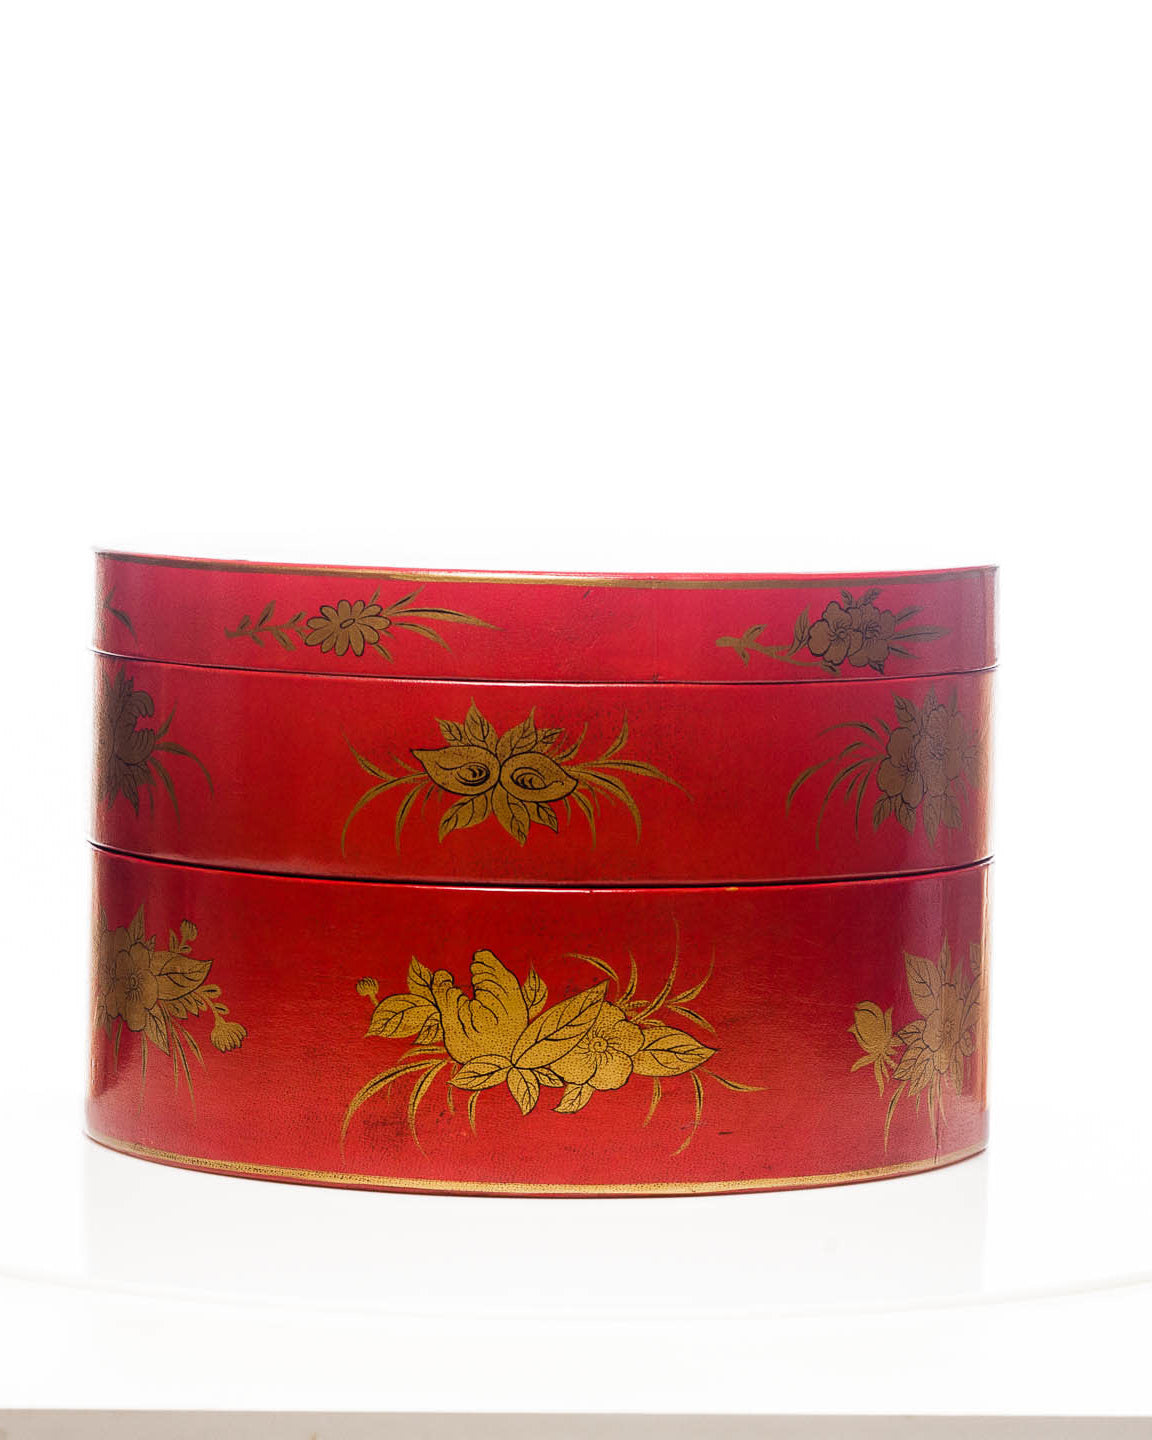 Mandarin Red Nurture 2-Tier Round Leather Sewing Box (14")